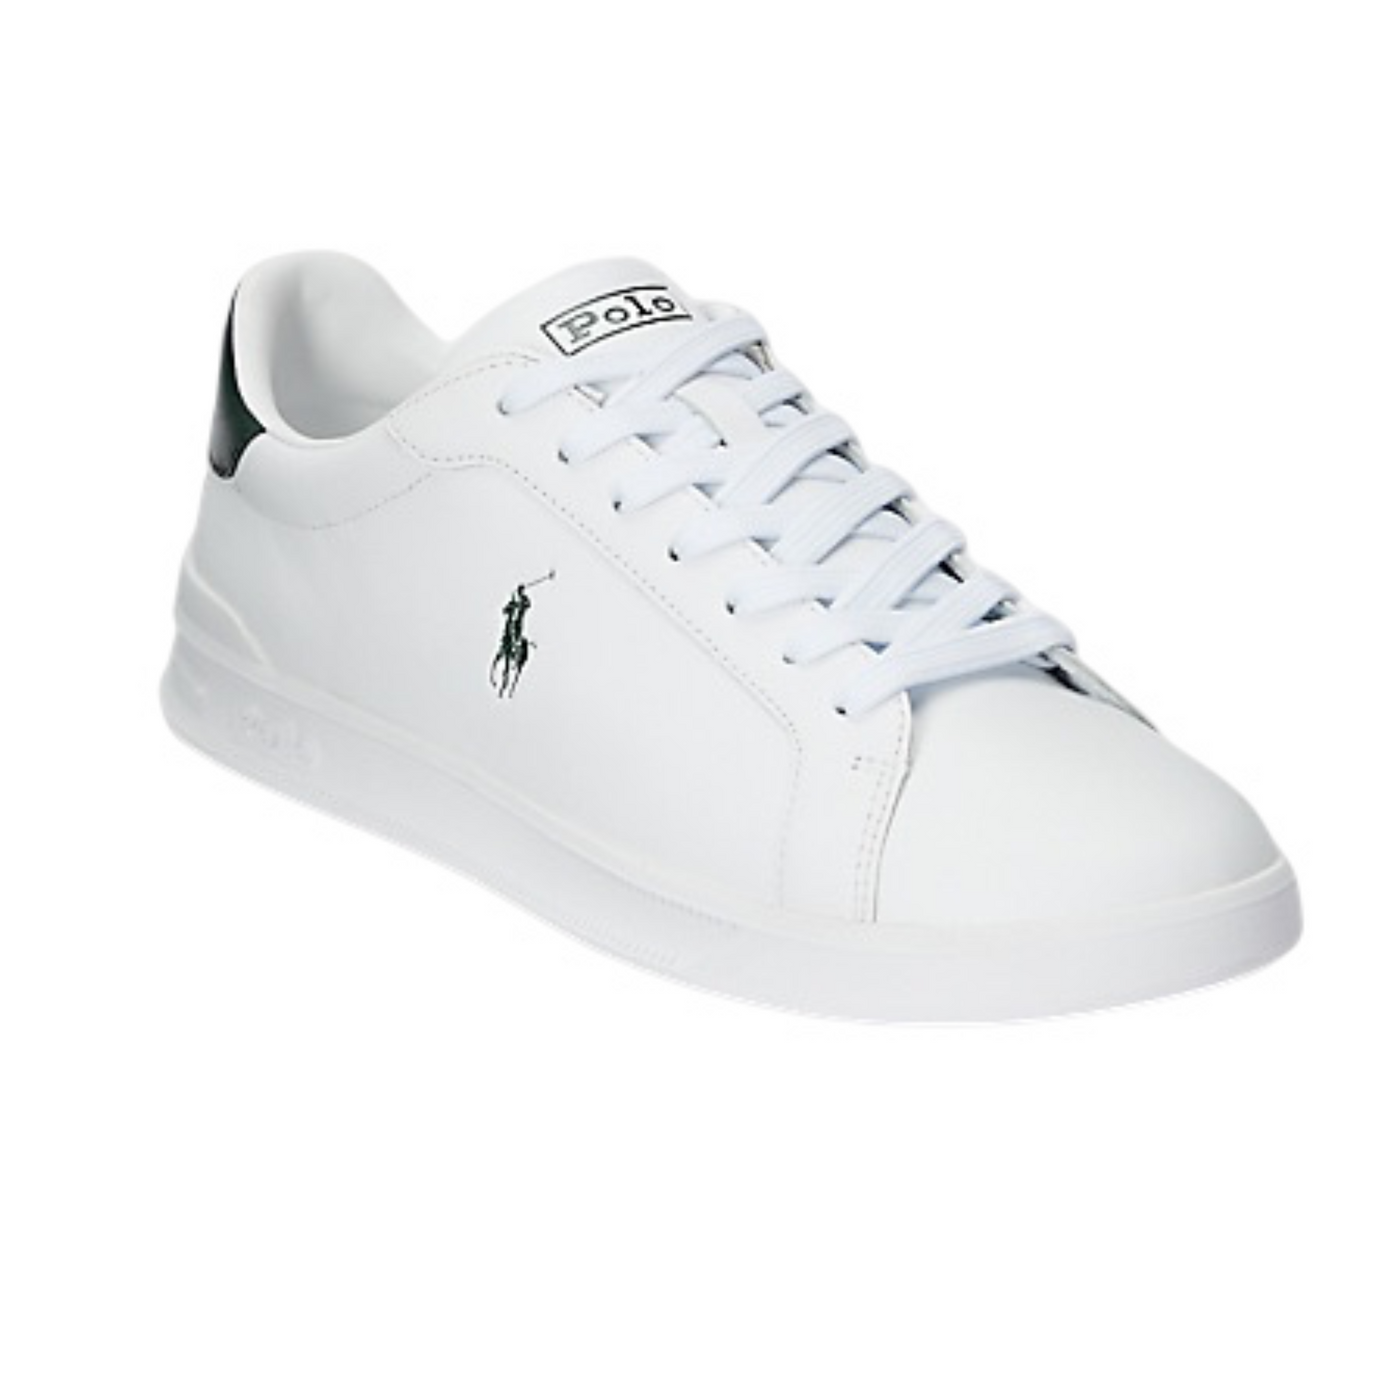 Ralph Lauren Herritage Court Sneakers White/Green